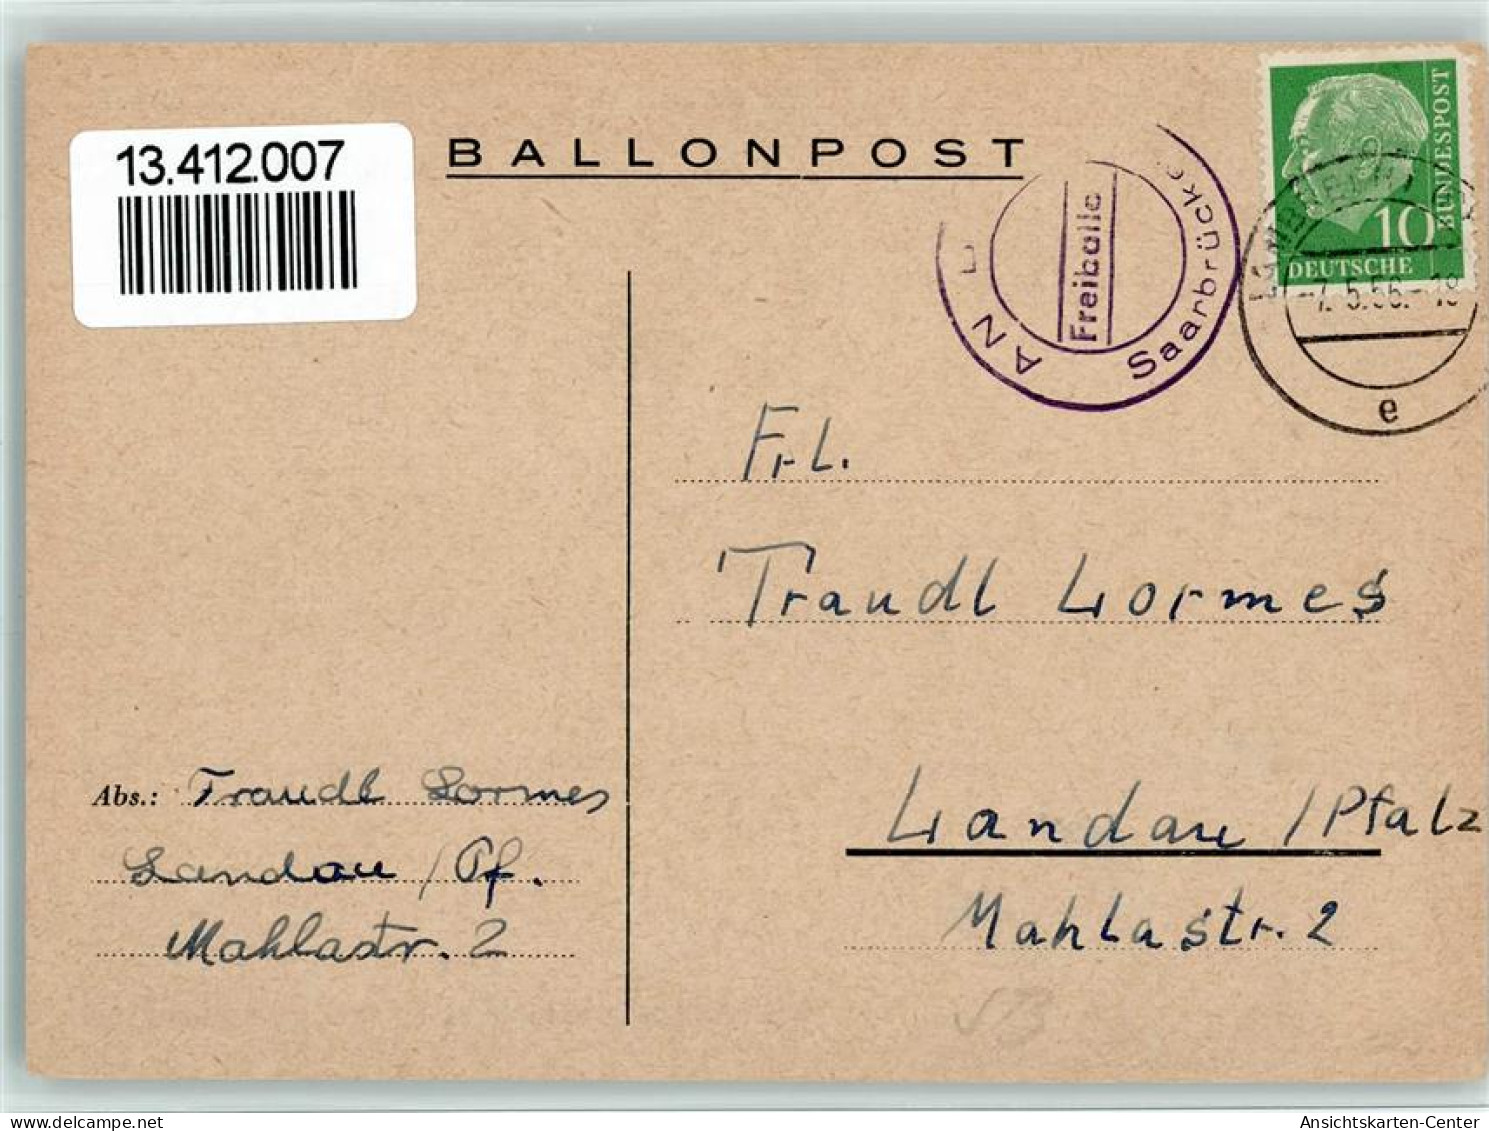 13412007 - Ballonpost Freiiballon Saarbruecken 1956 - Luchtballon